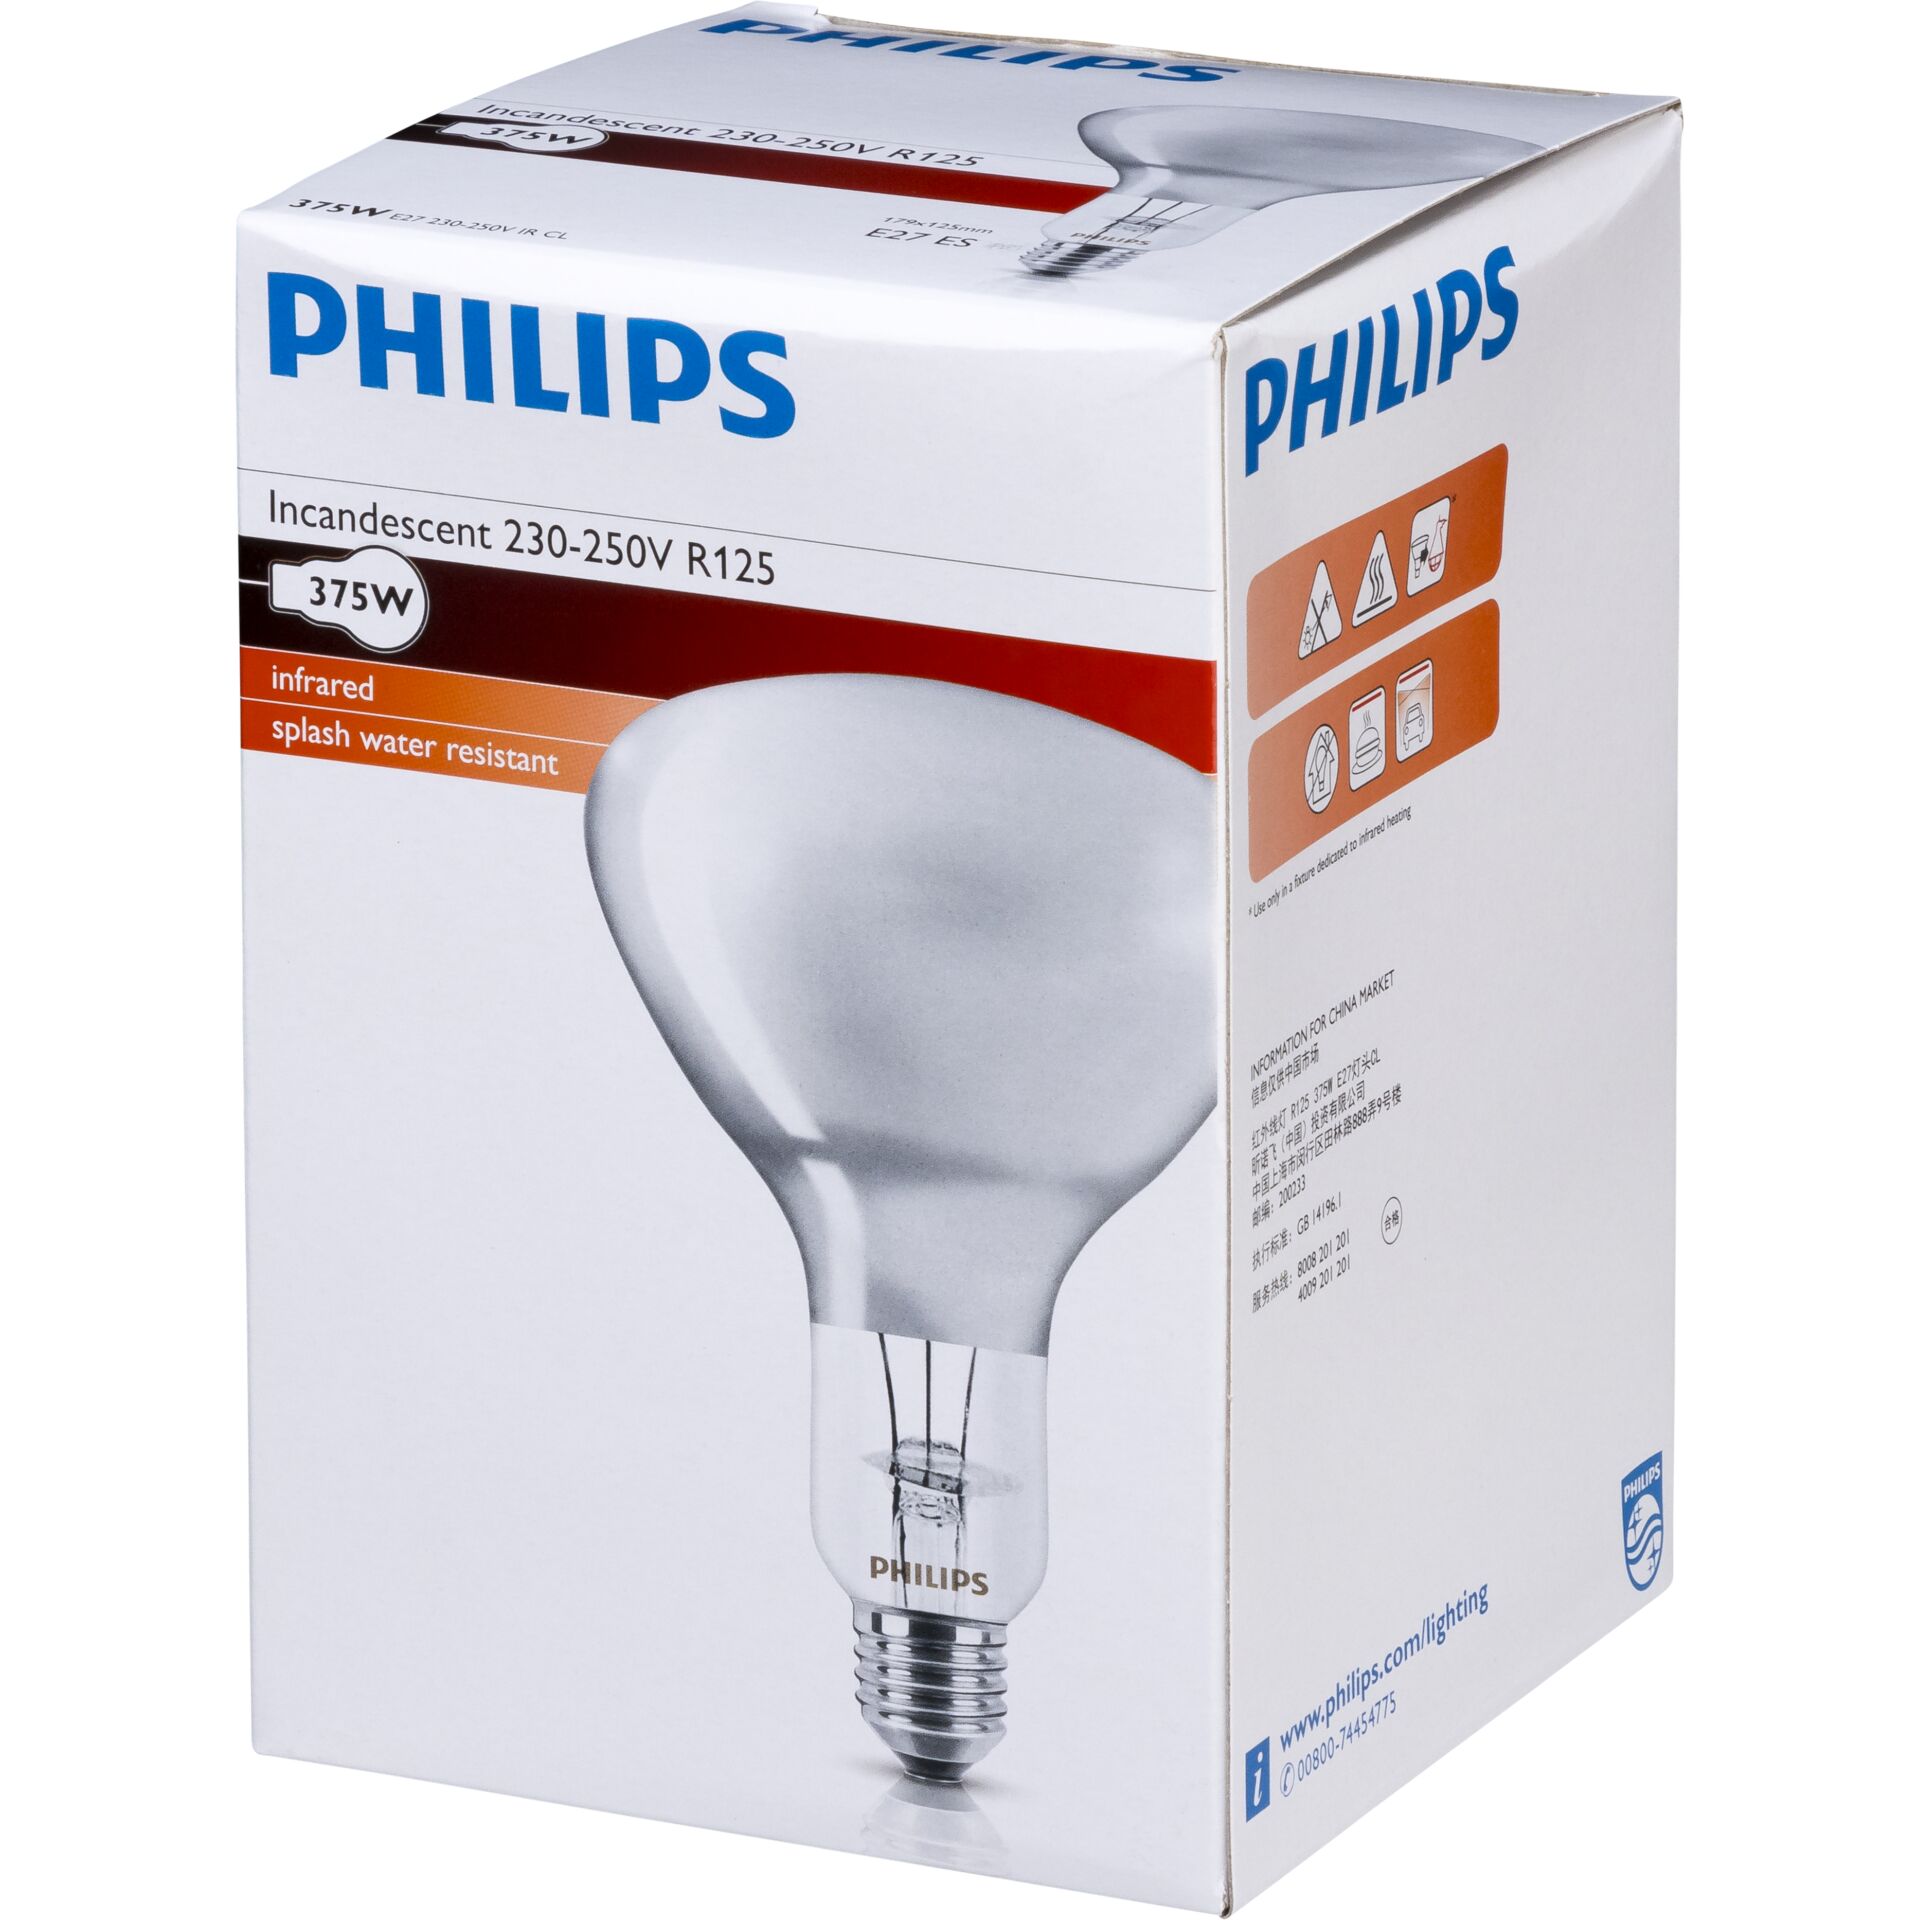 Philips lampada infrar. BR125 IR 375W E27 230-250V CL